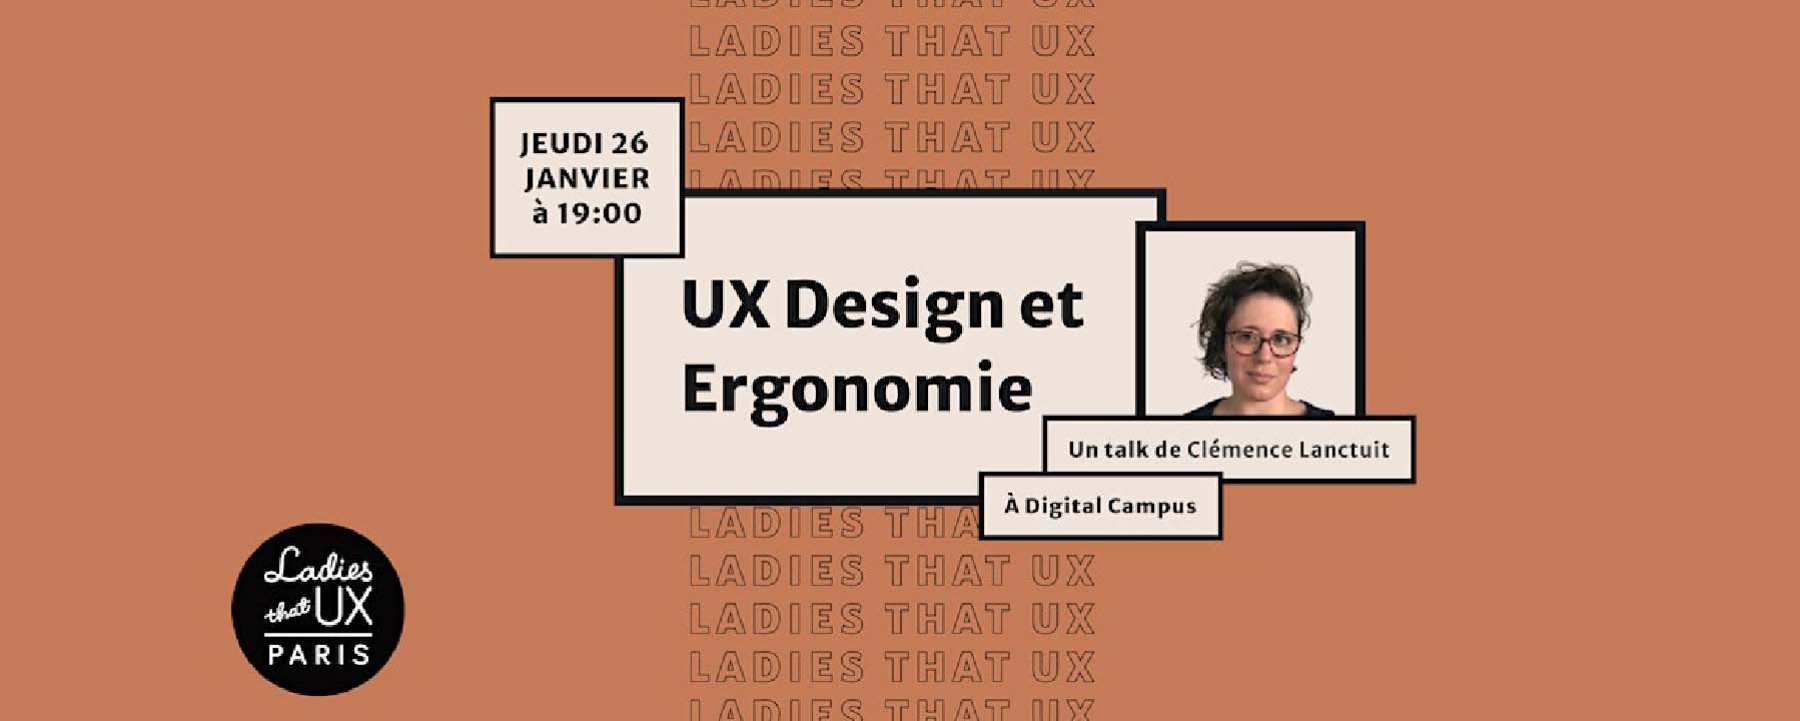 UX Design et Ergonomie